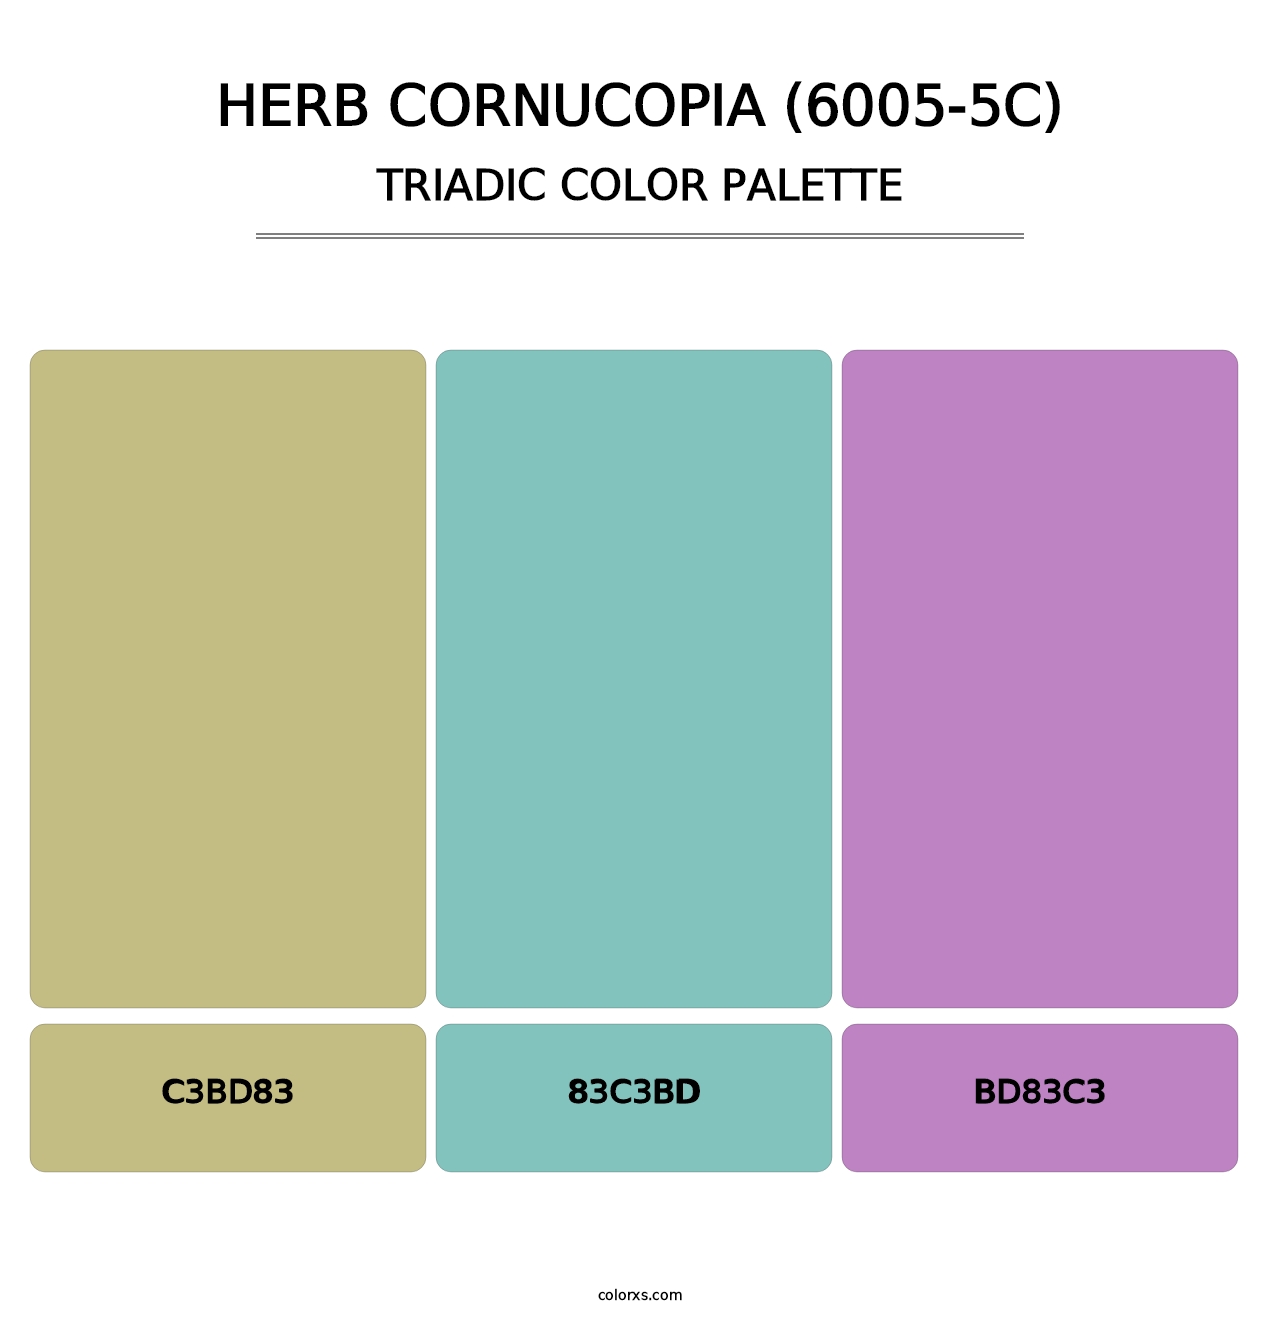 Herb Cornucopia (6005-5C) - Triadic Color Palette